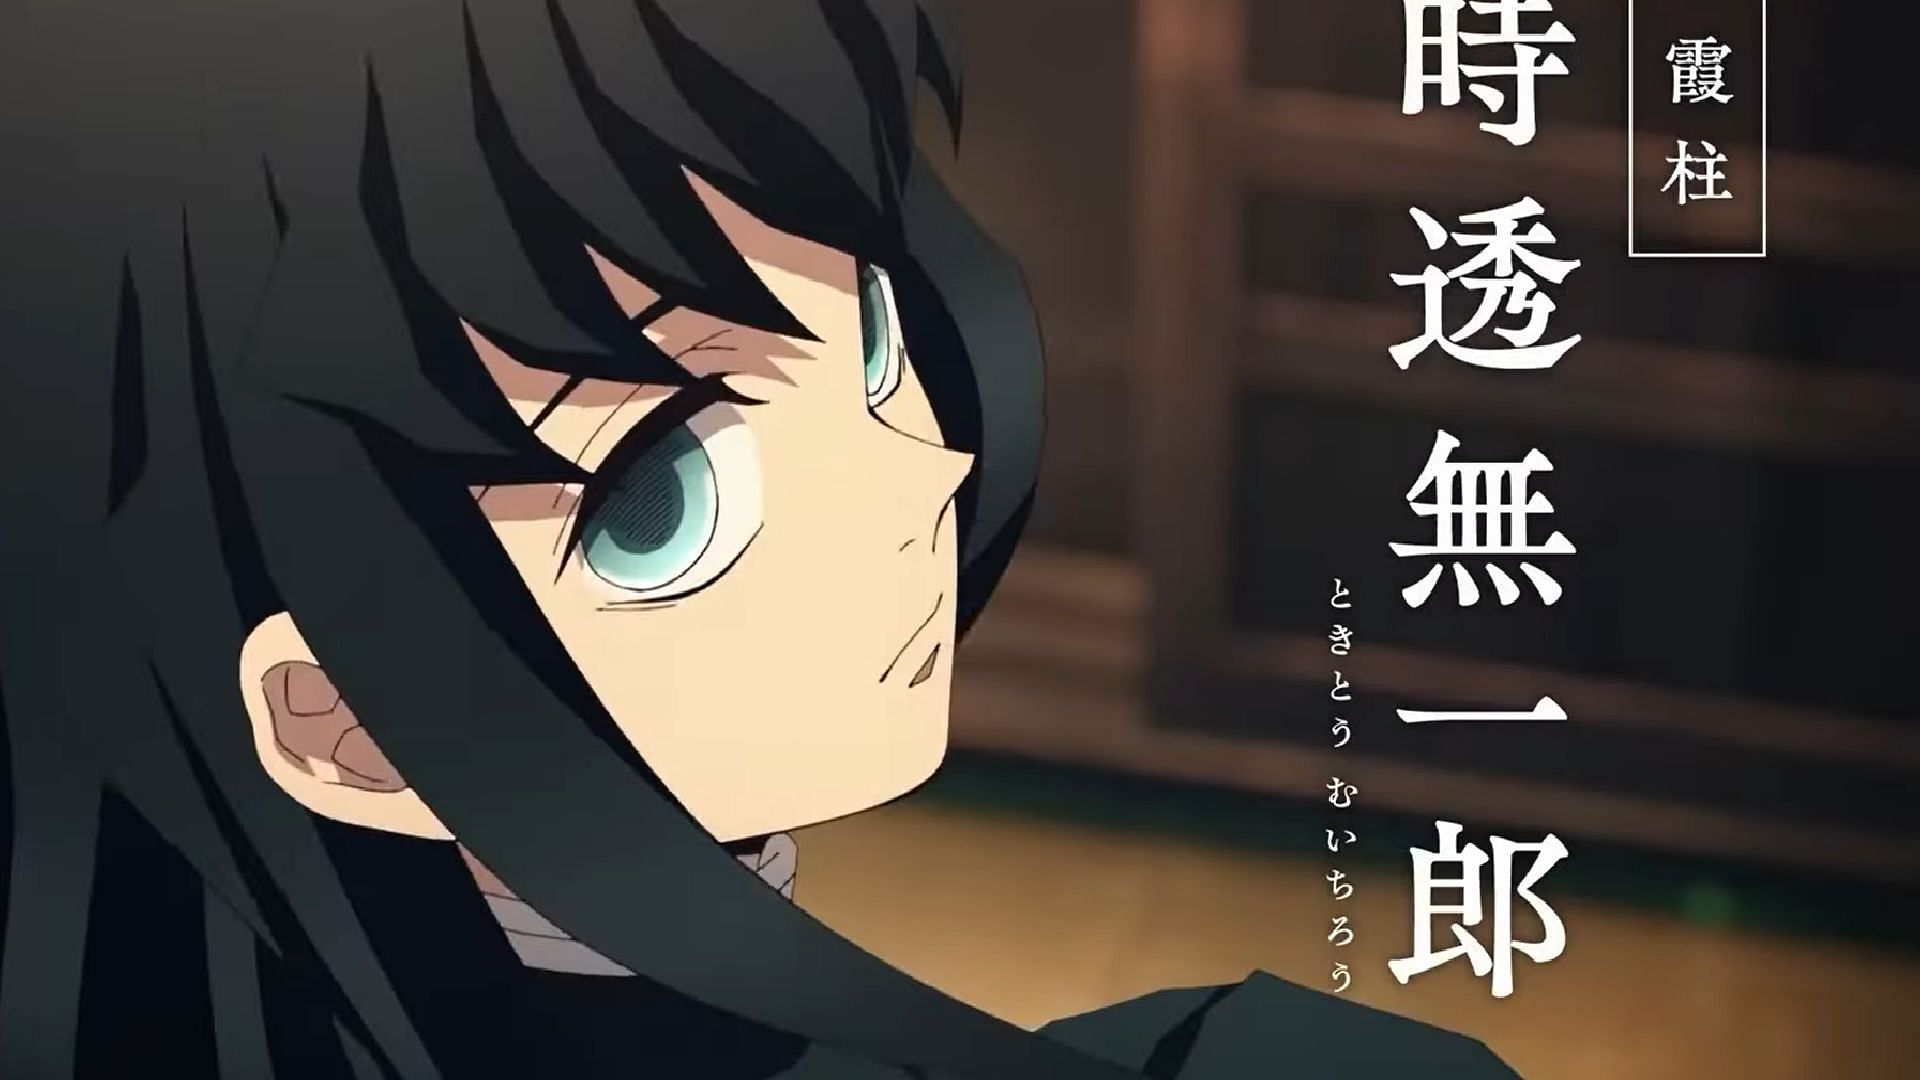 Demon SLayer Kimetsu no yaiba Season 2, 3 release date trailer